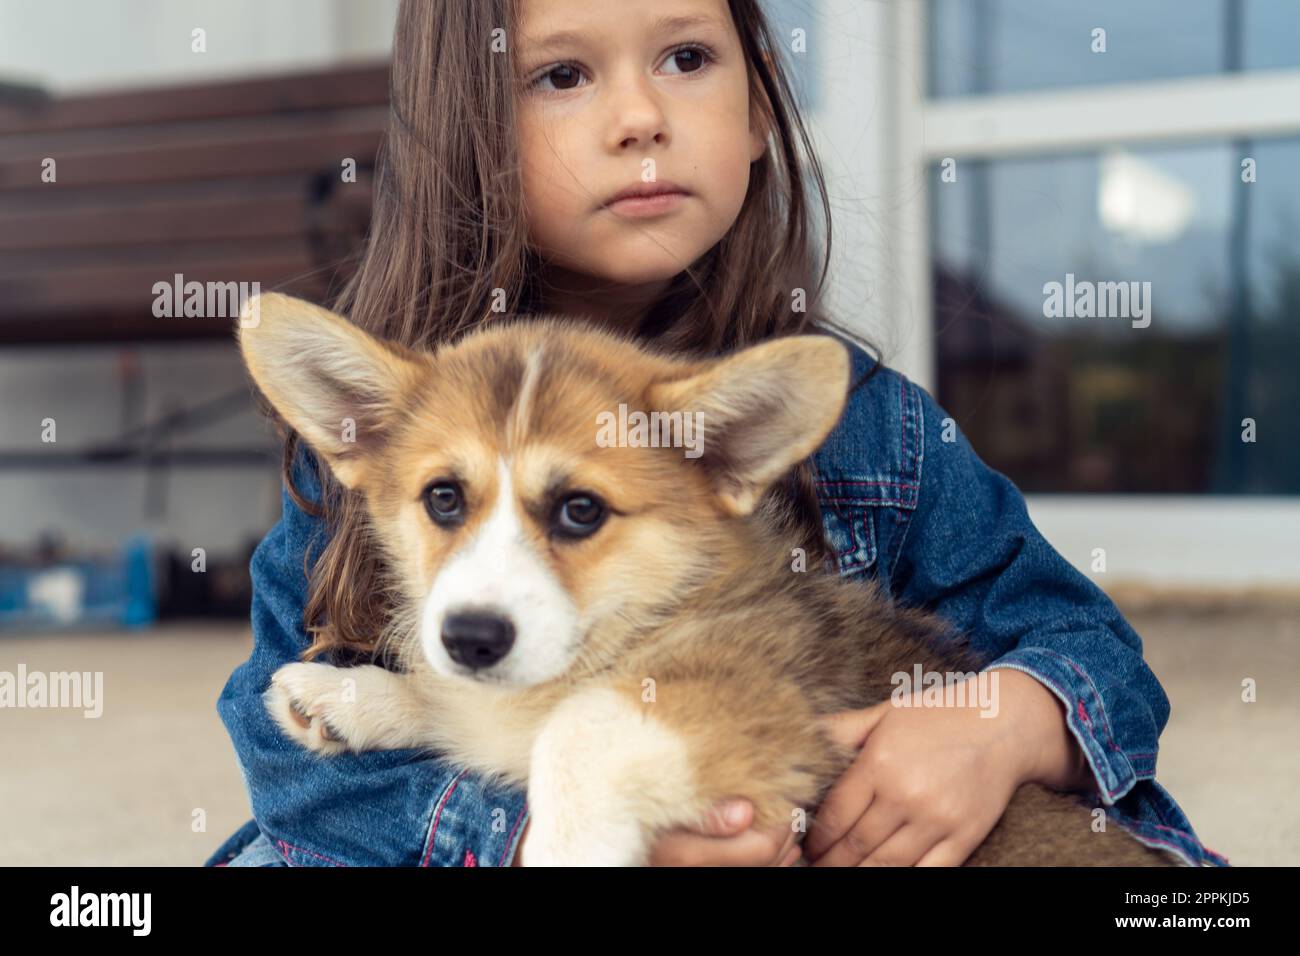 Ritratto di una fantastica bambina dai capelli lunghi che indossa una giacca in denim, che abbraccia il dolce cucciolo gallese pembroke Corgi. Foto Stock